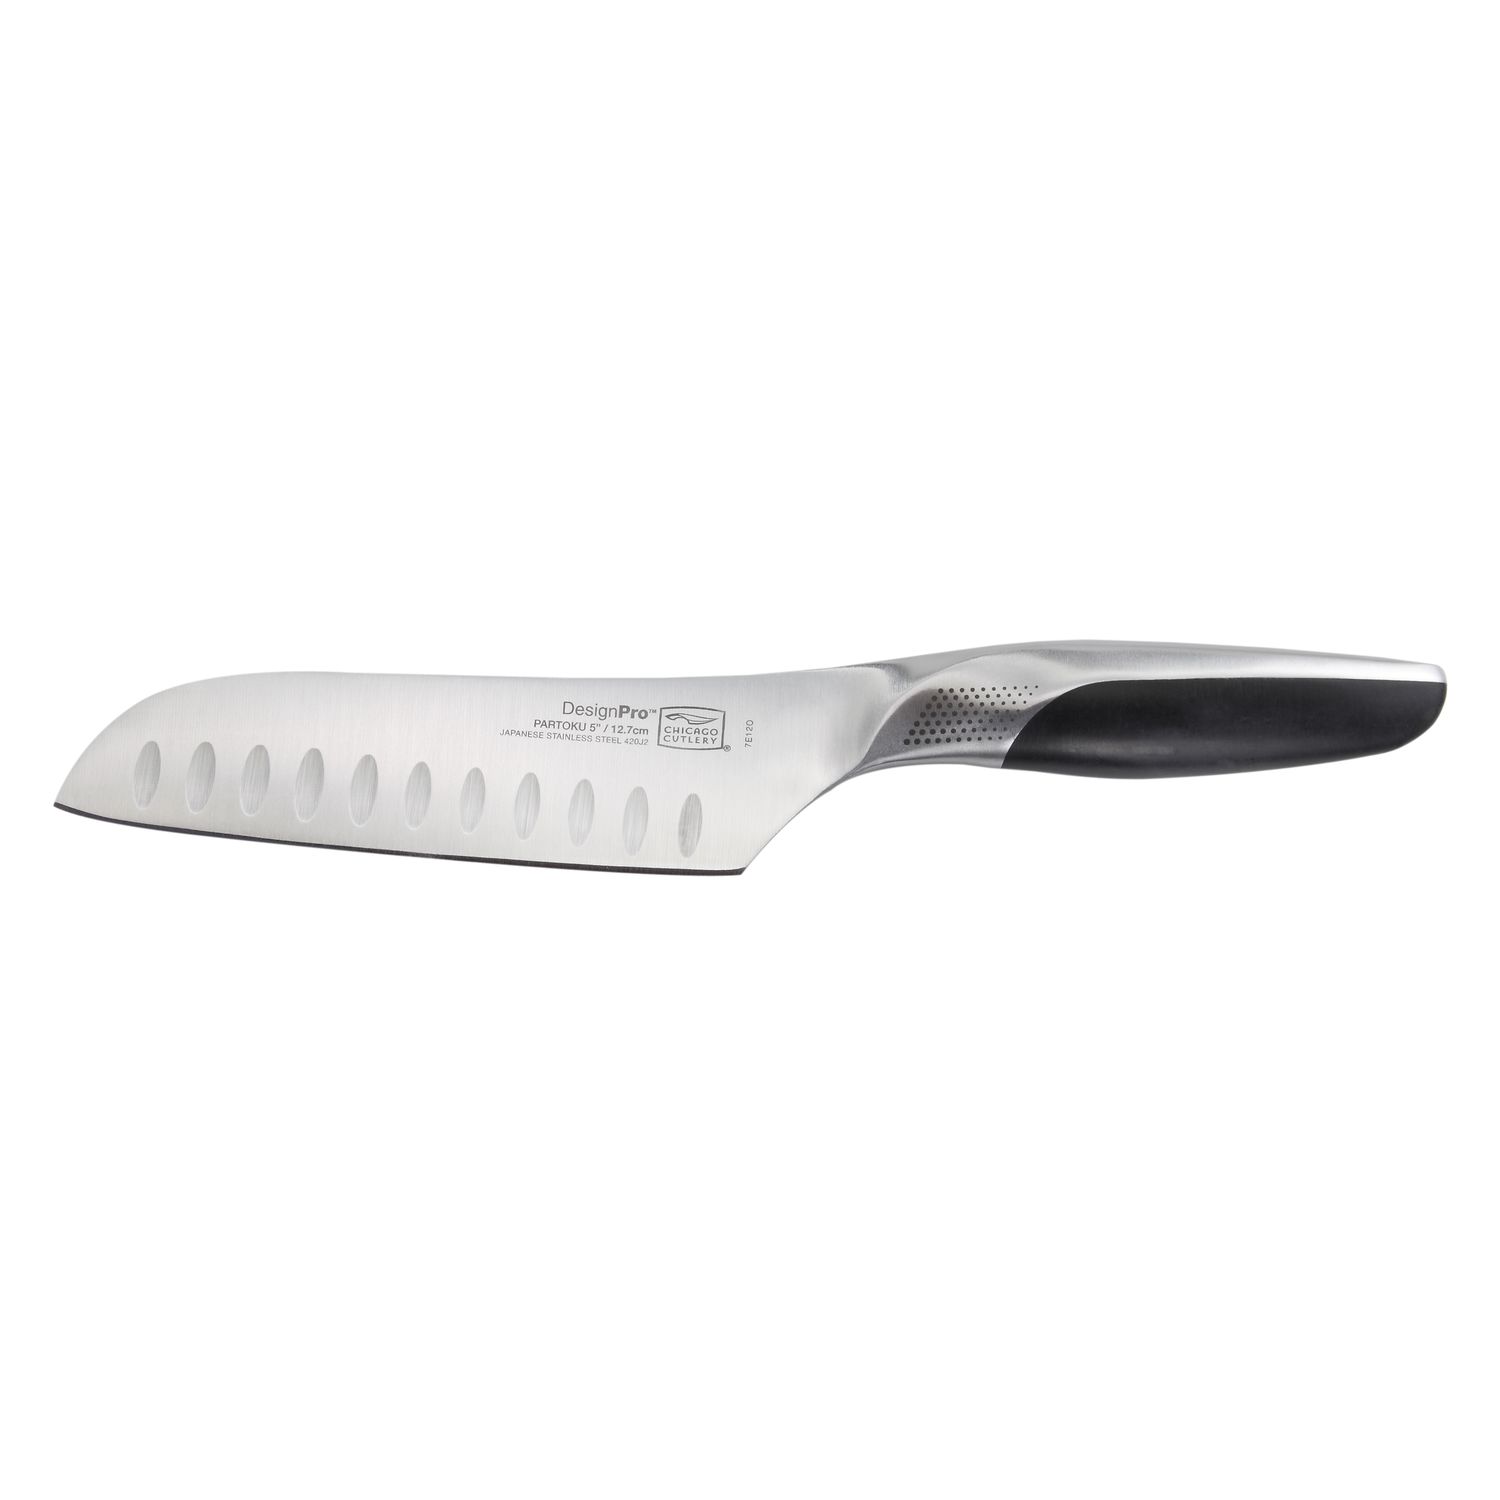 Нож для чистки Chicago Cutlery DesignPro 12,7см нож для чистки berghoff collectandcook 7 5см 4490016